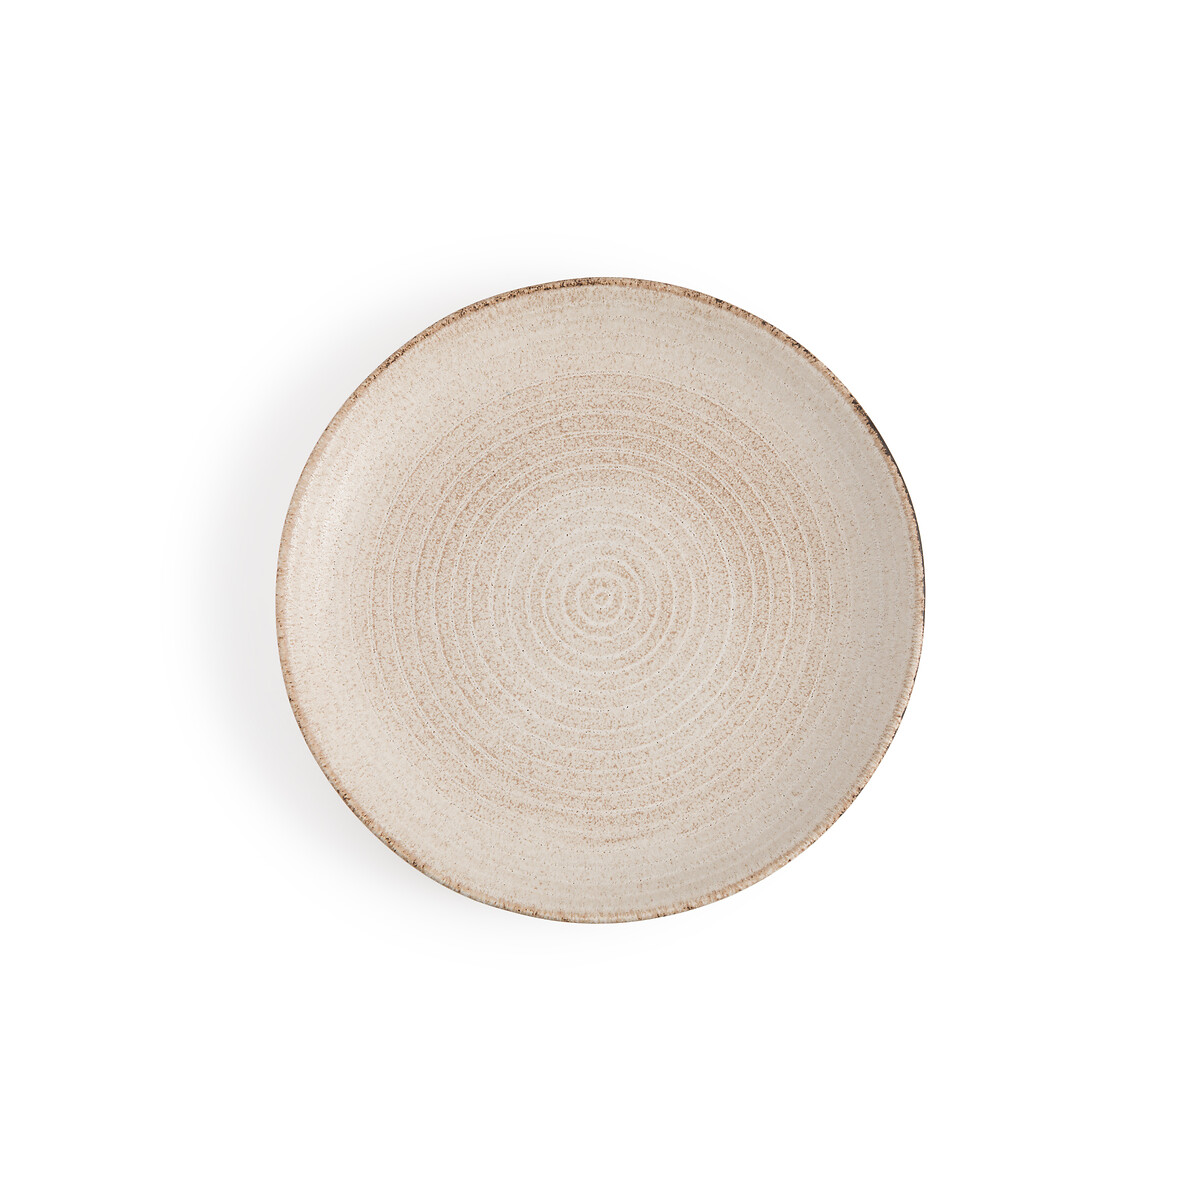 Комплект из четырех тарелок плоских Alvena единый размер бежевый комплект из четырех плоских тарелок из керамики cream единый размер бежевый